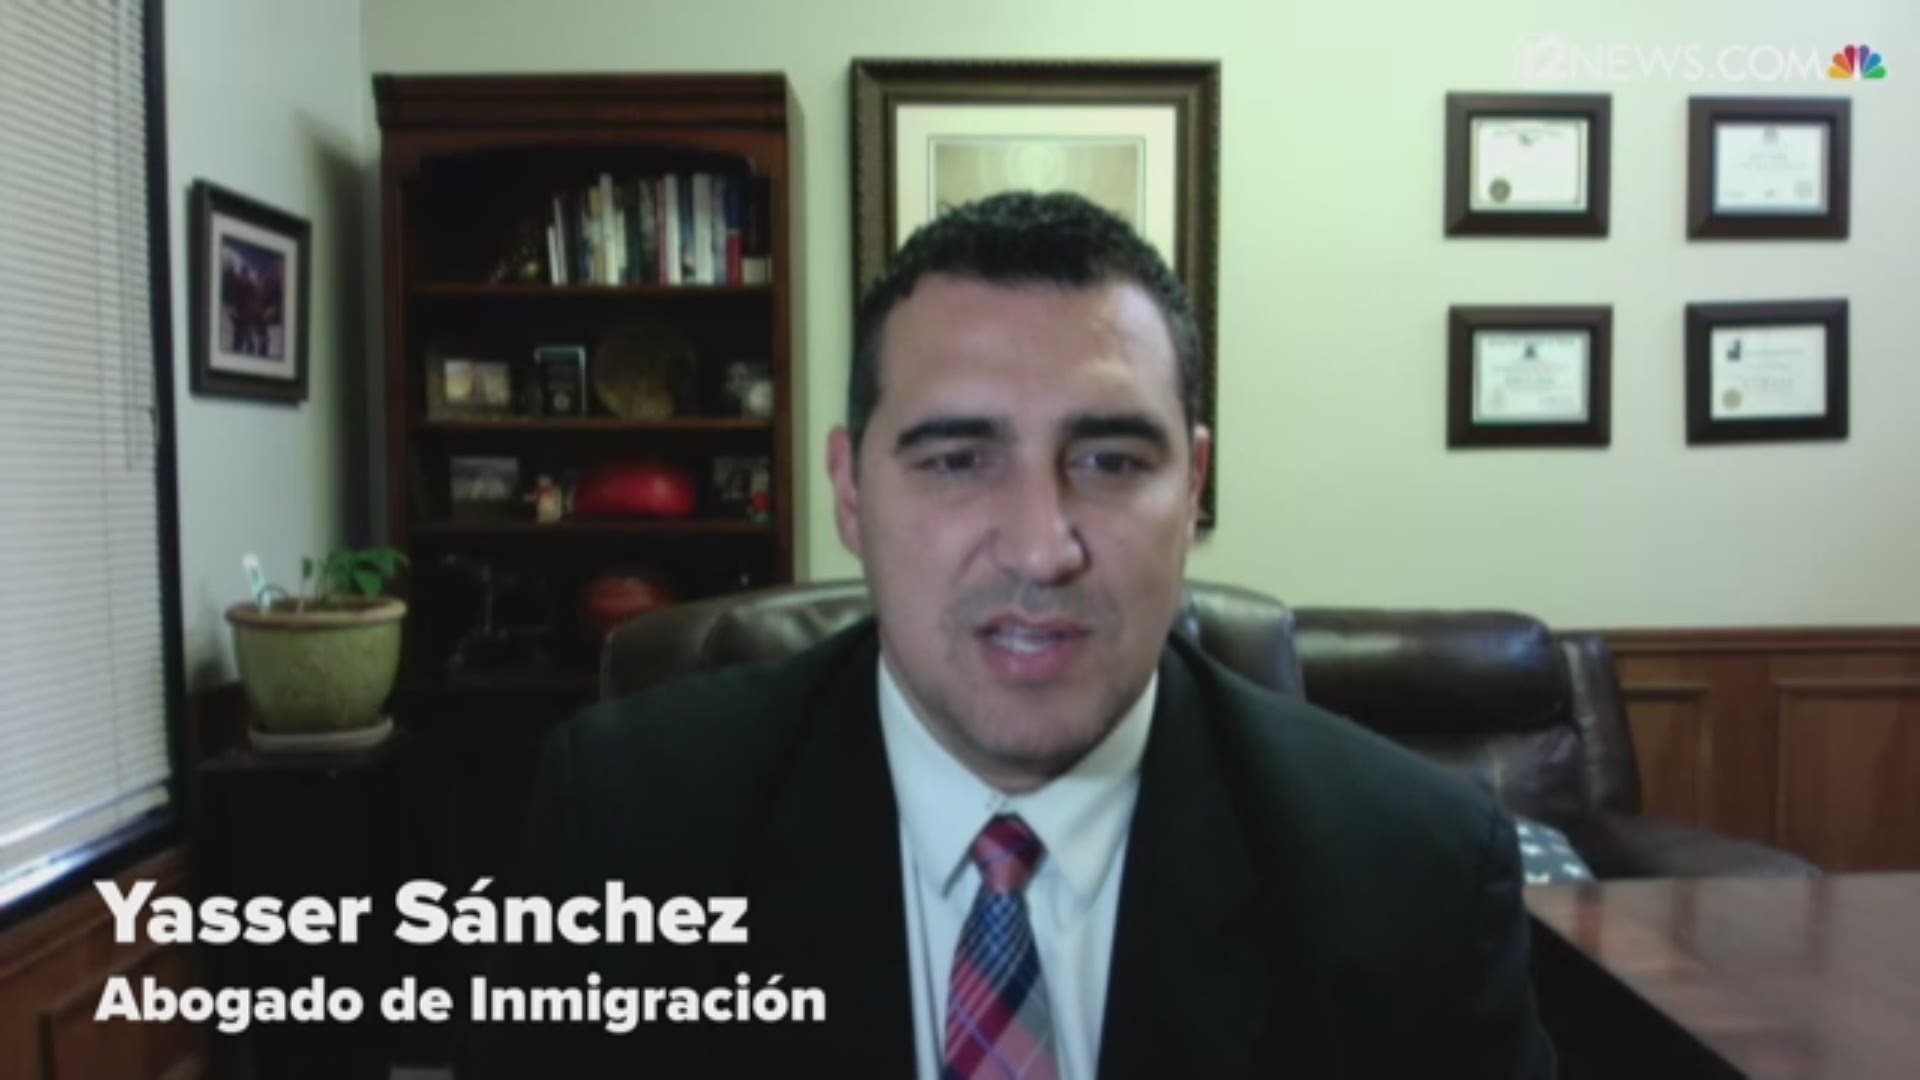 El abogado de inmigración, Yasser Sánchez, explica algunos de los cambios que ha habido en el proceso de ciudadanía debido a la pandemia.